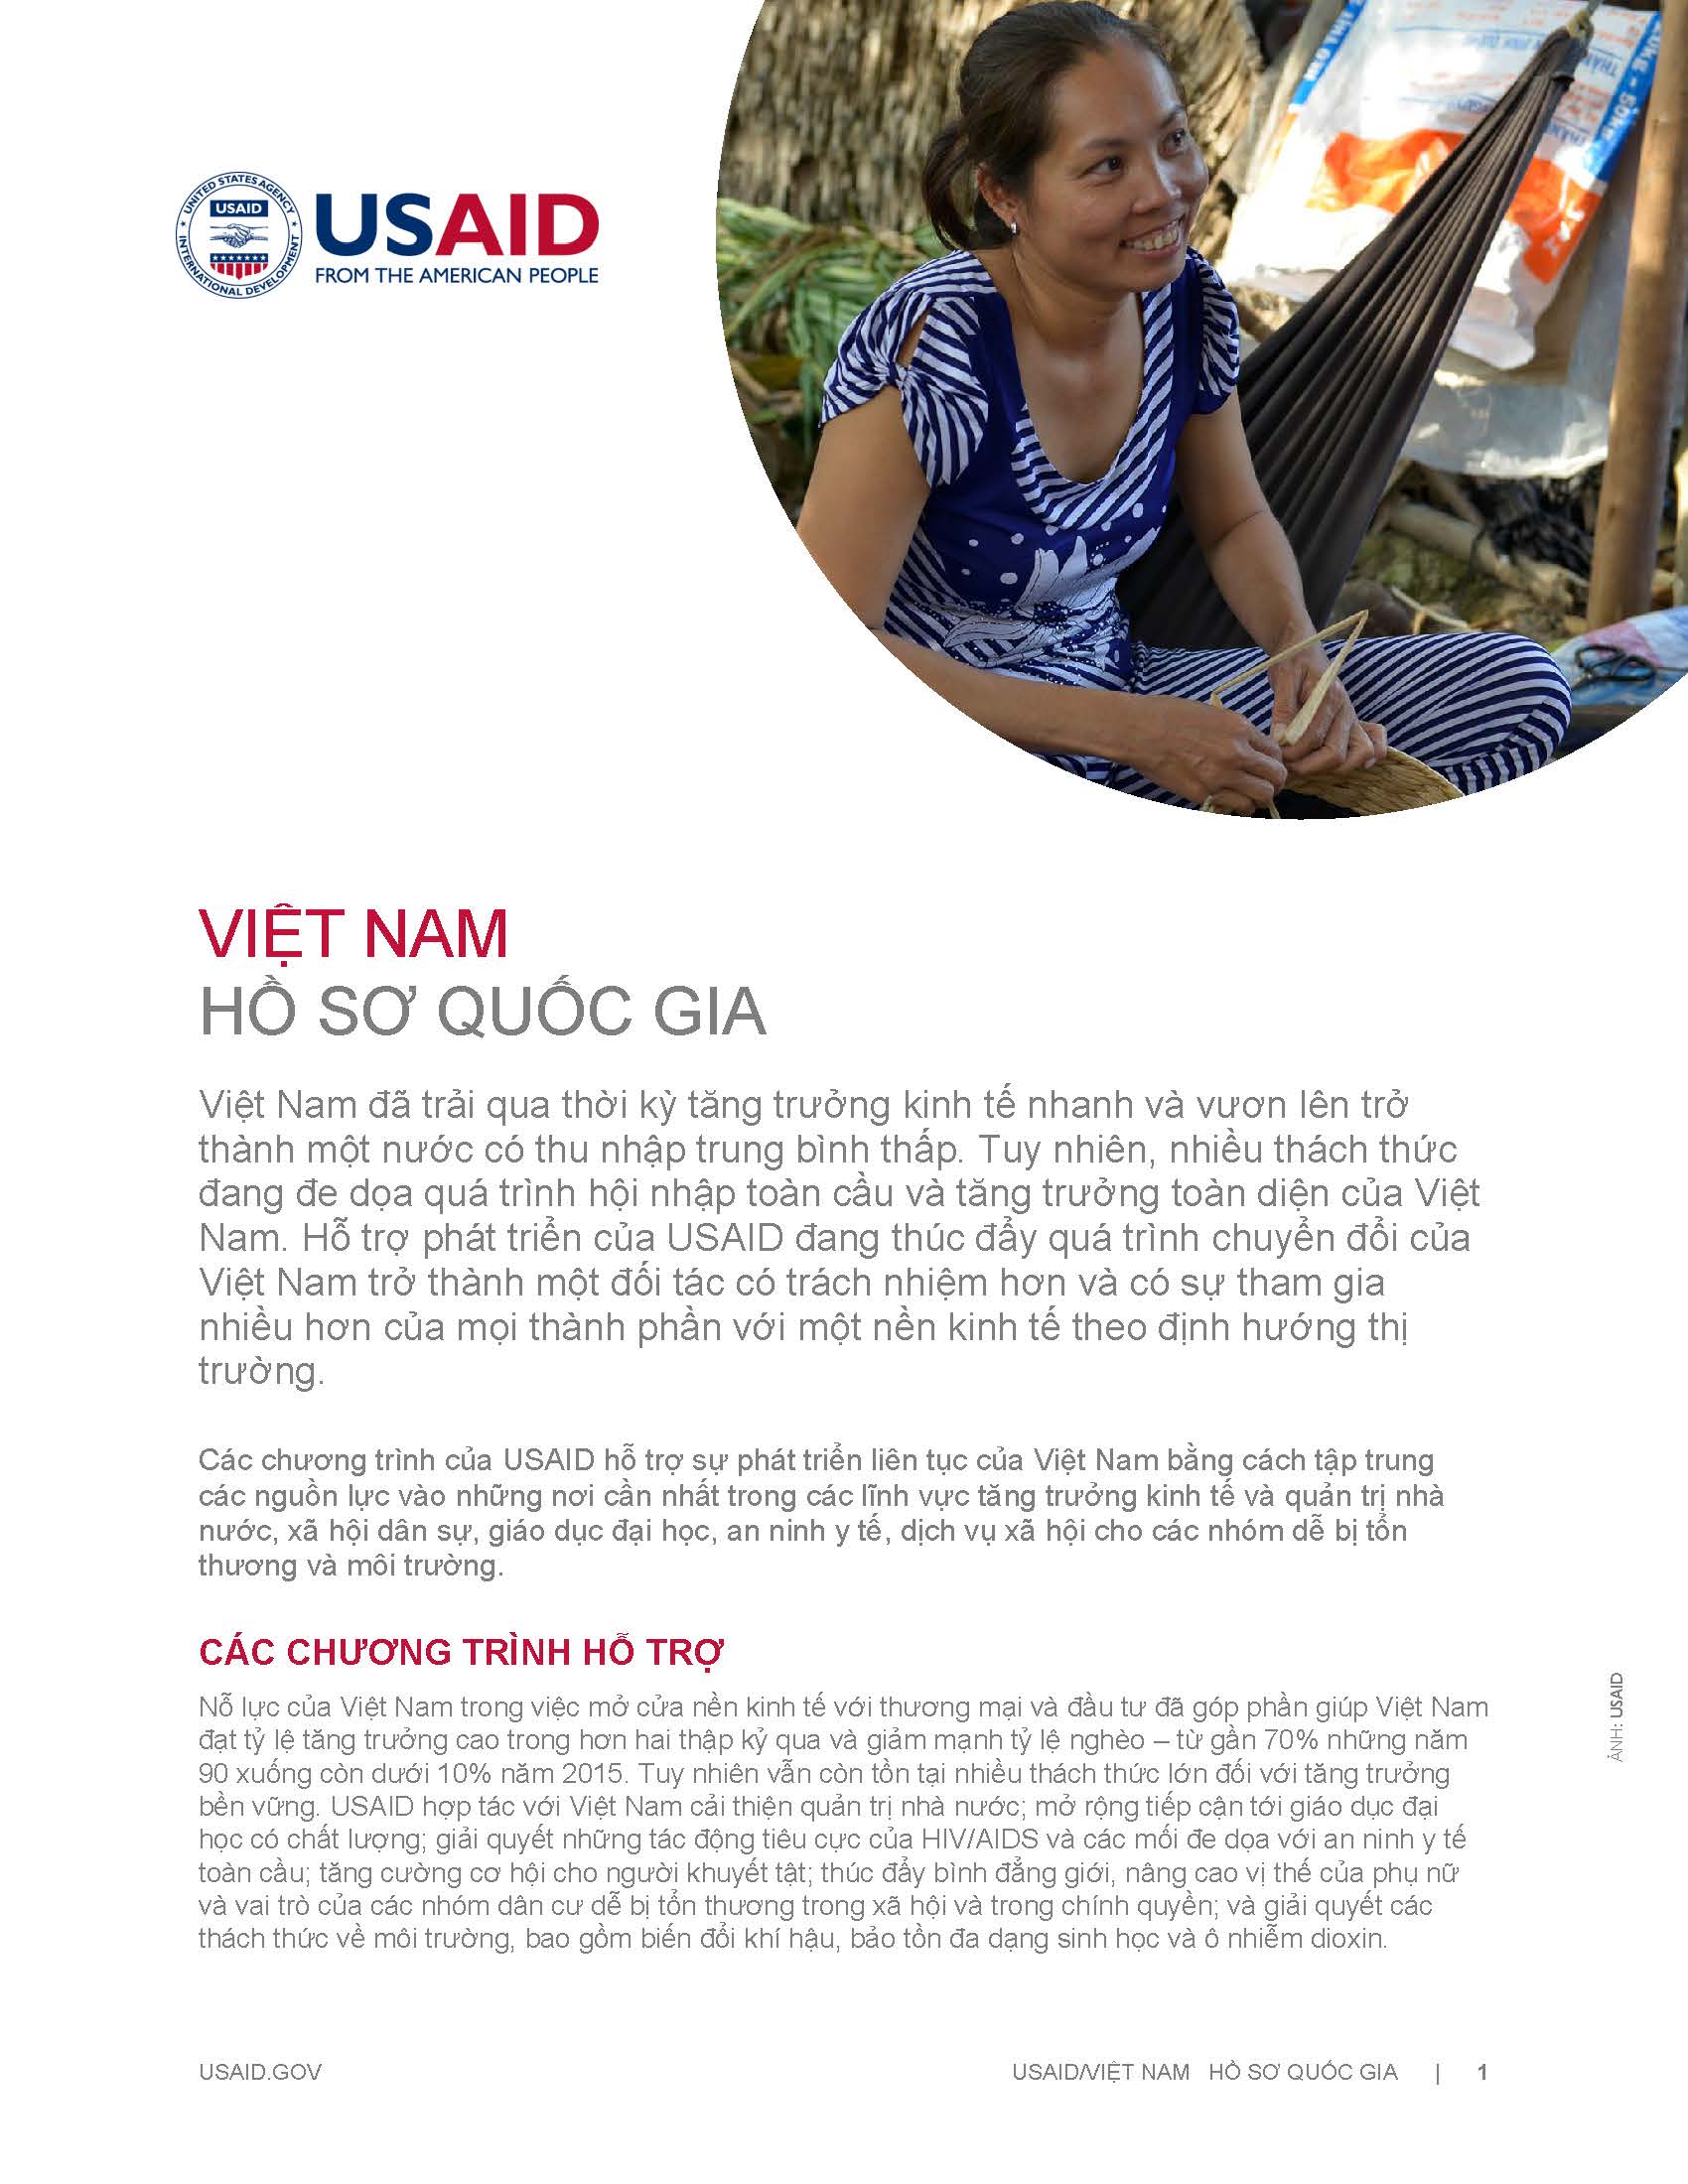 Hồ sơ Quốc gia Việt Nam